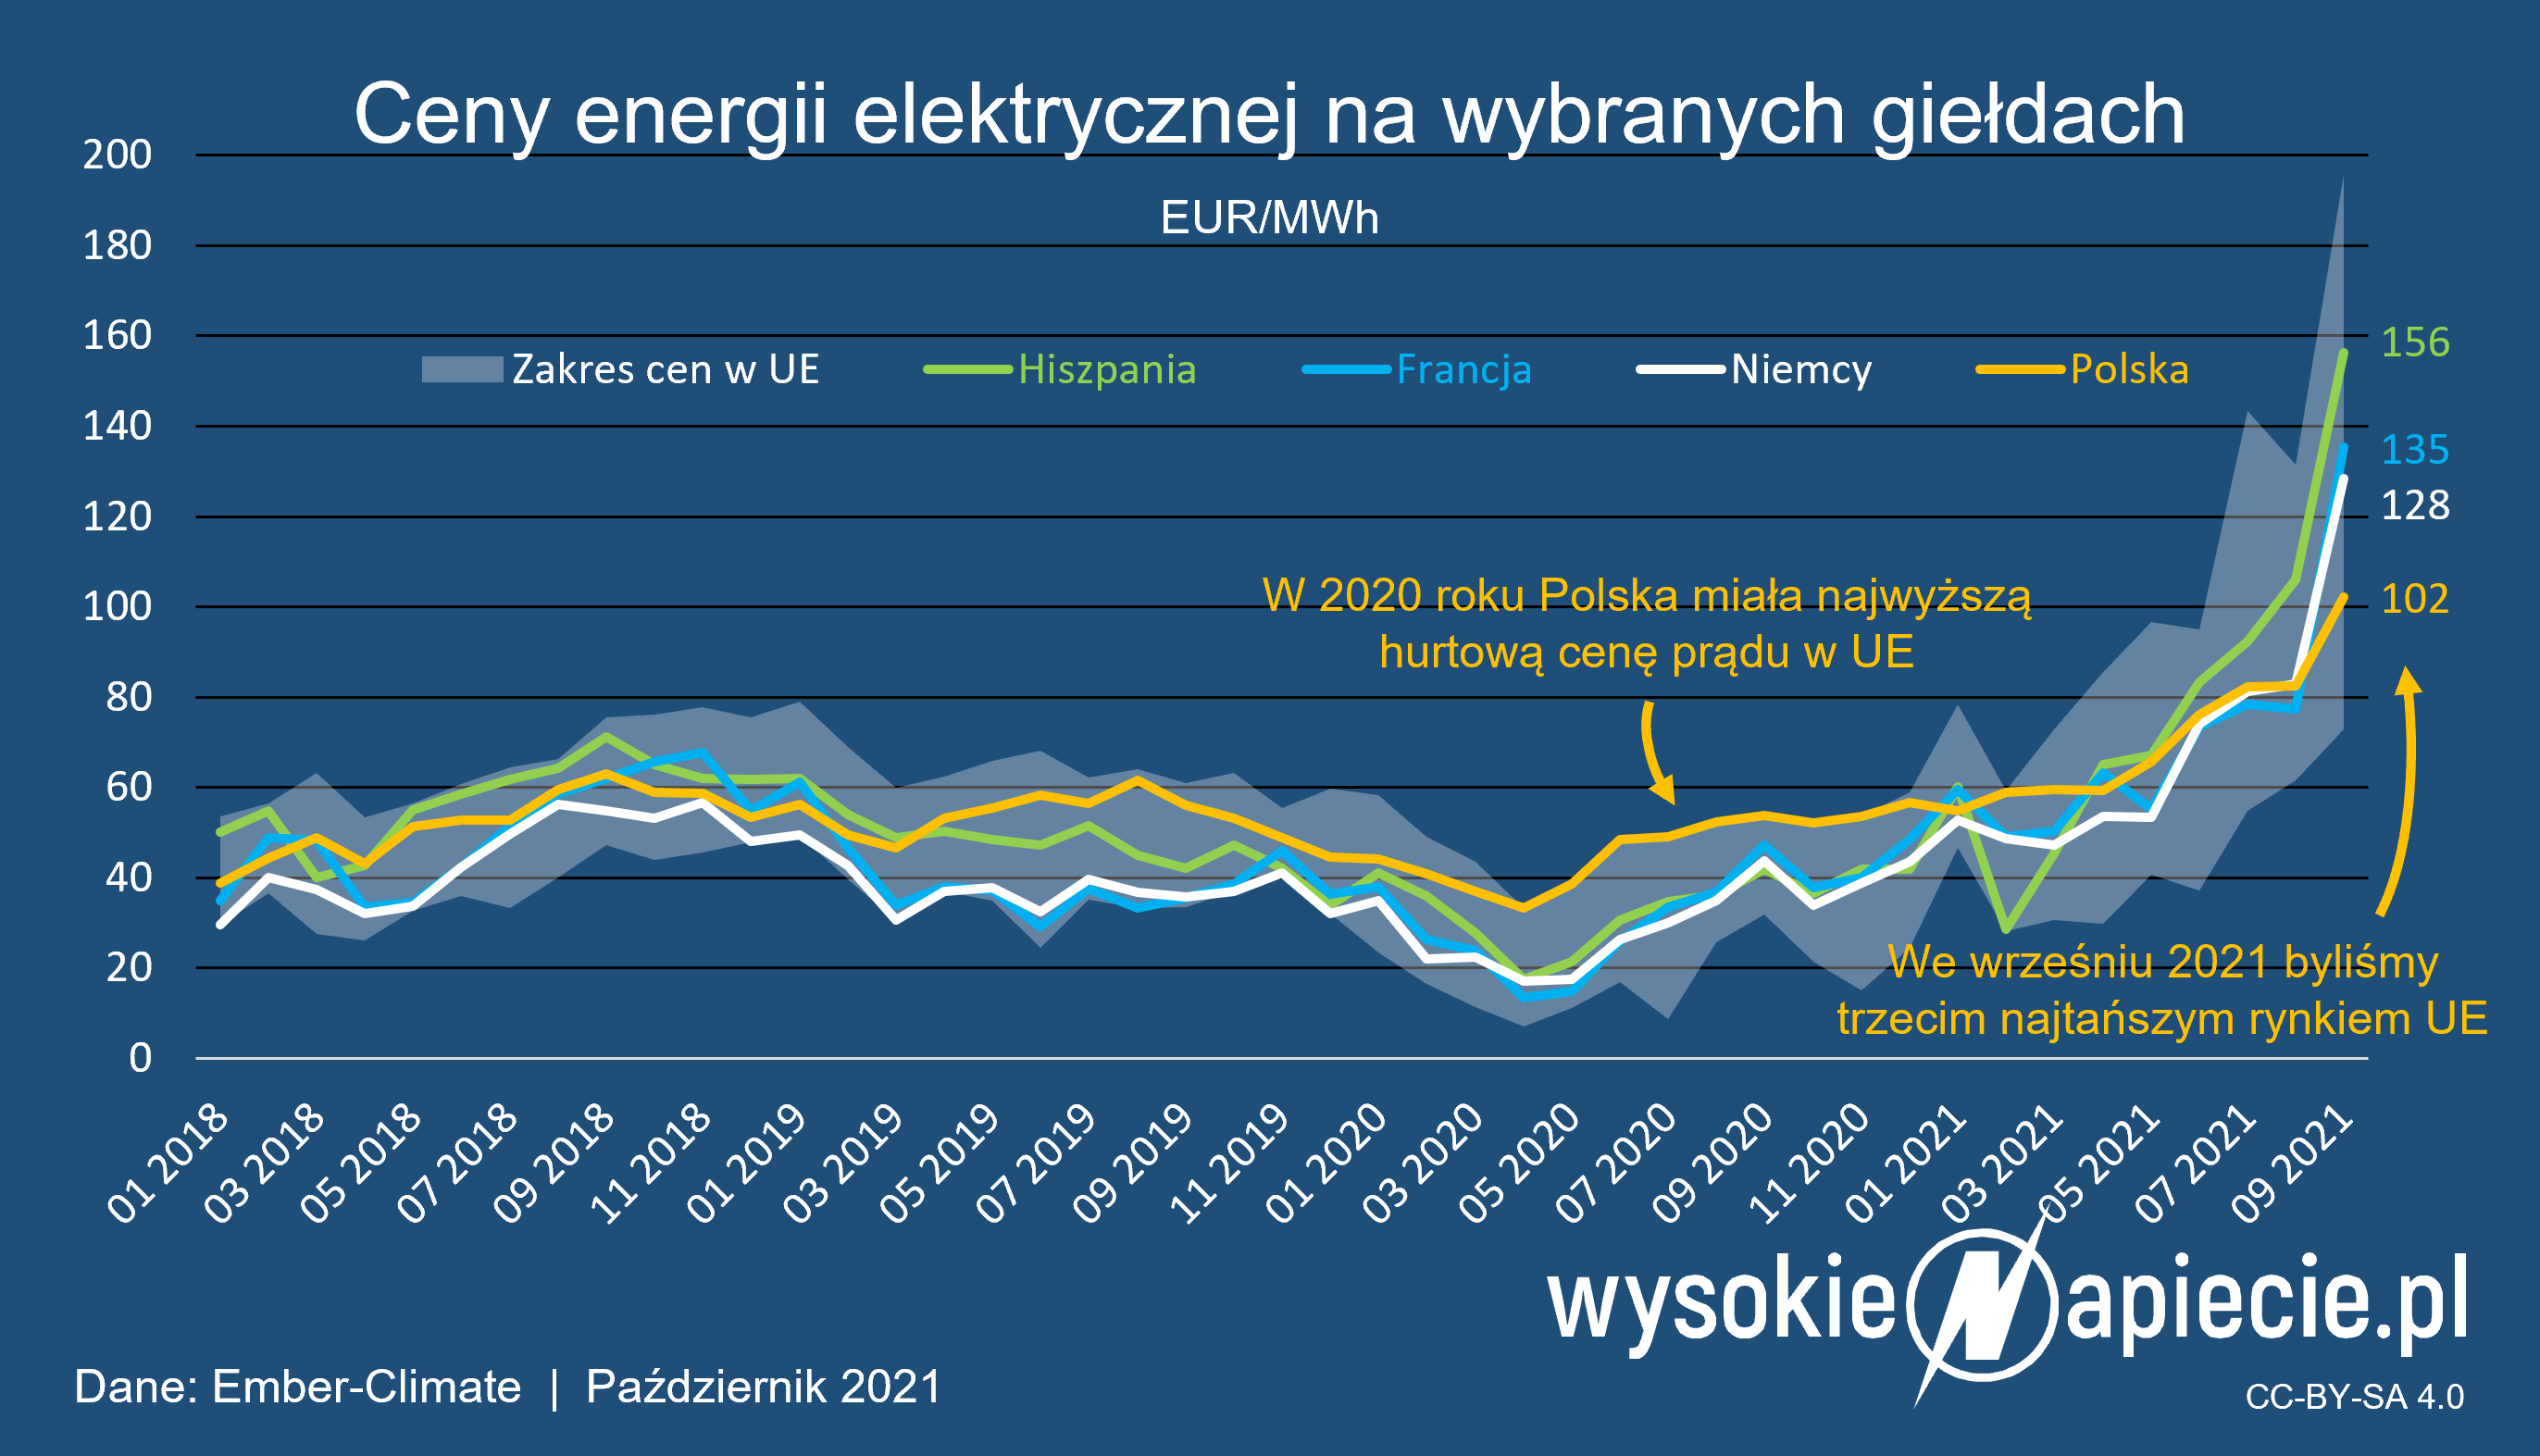 https://wysokienapiecie.pl/wp-content/uploads/2021/10/ceny_energii_prad_polska_europa_09_2021.png